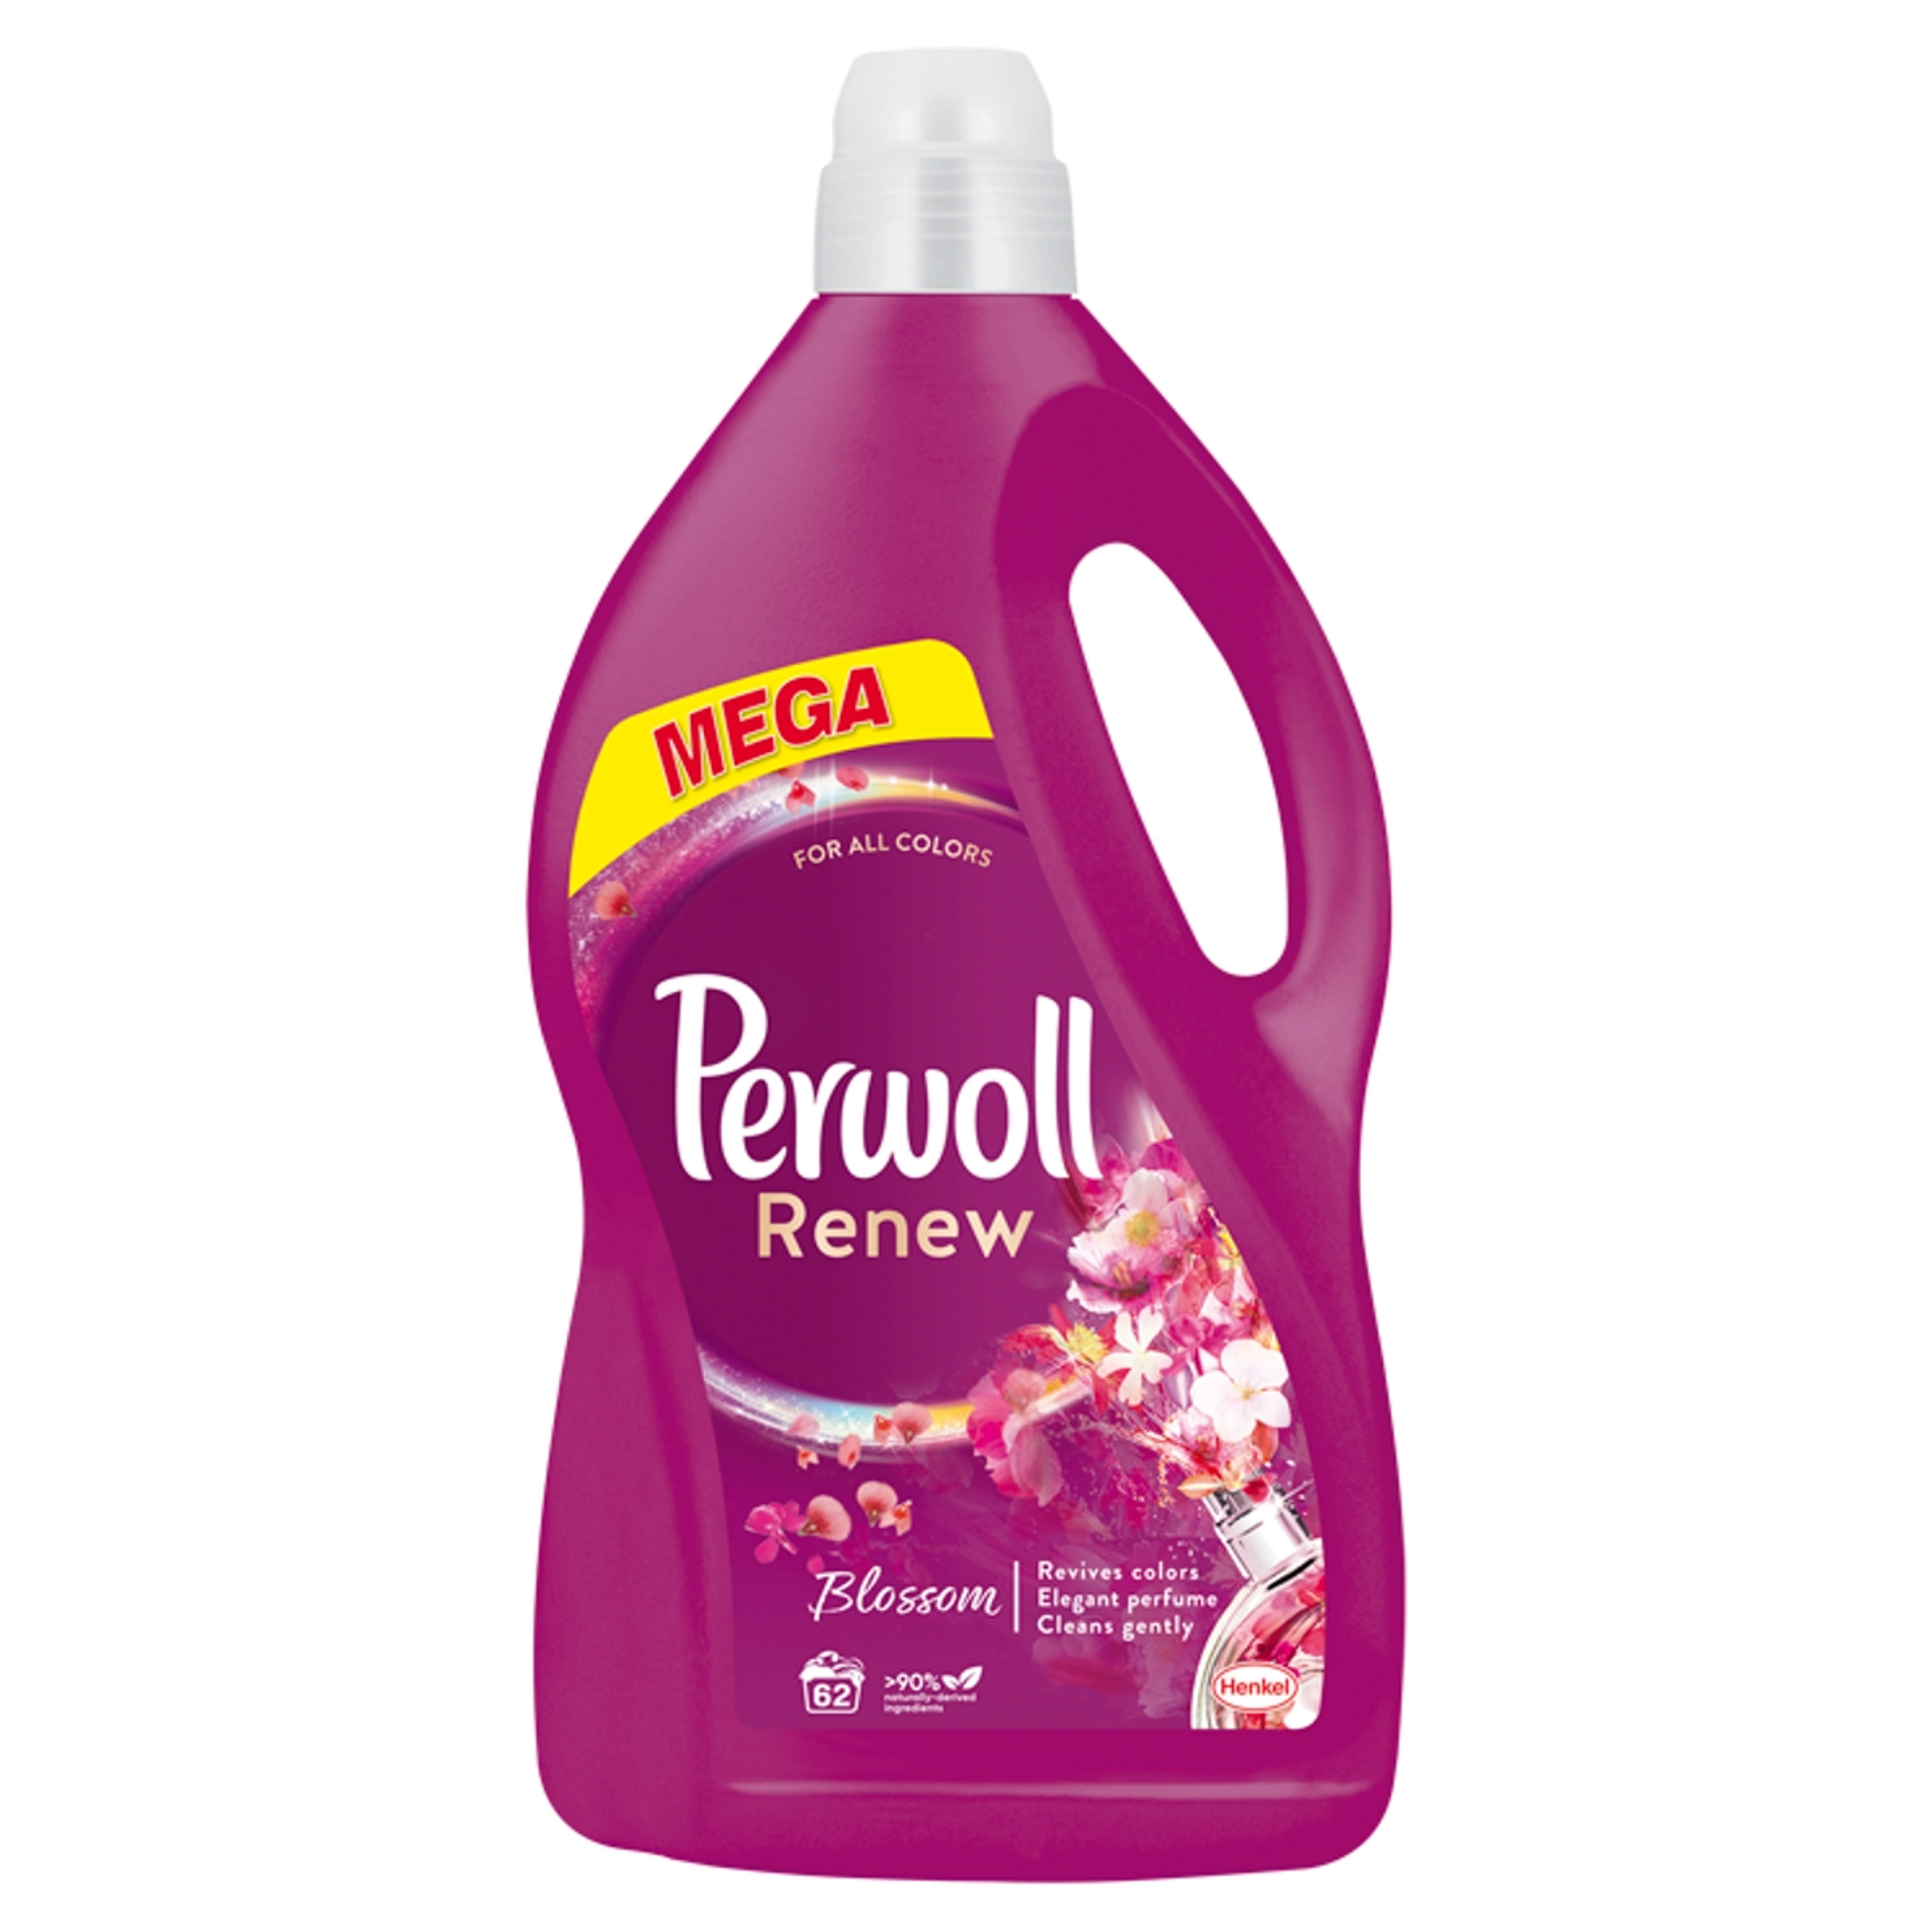 Perwoll Renew & Blossom folyékony mosószer, 62 mosás - 3720 ml